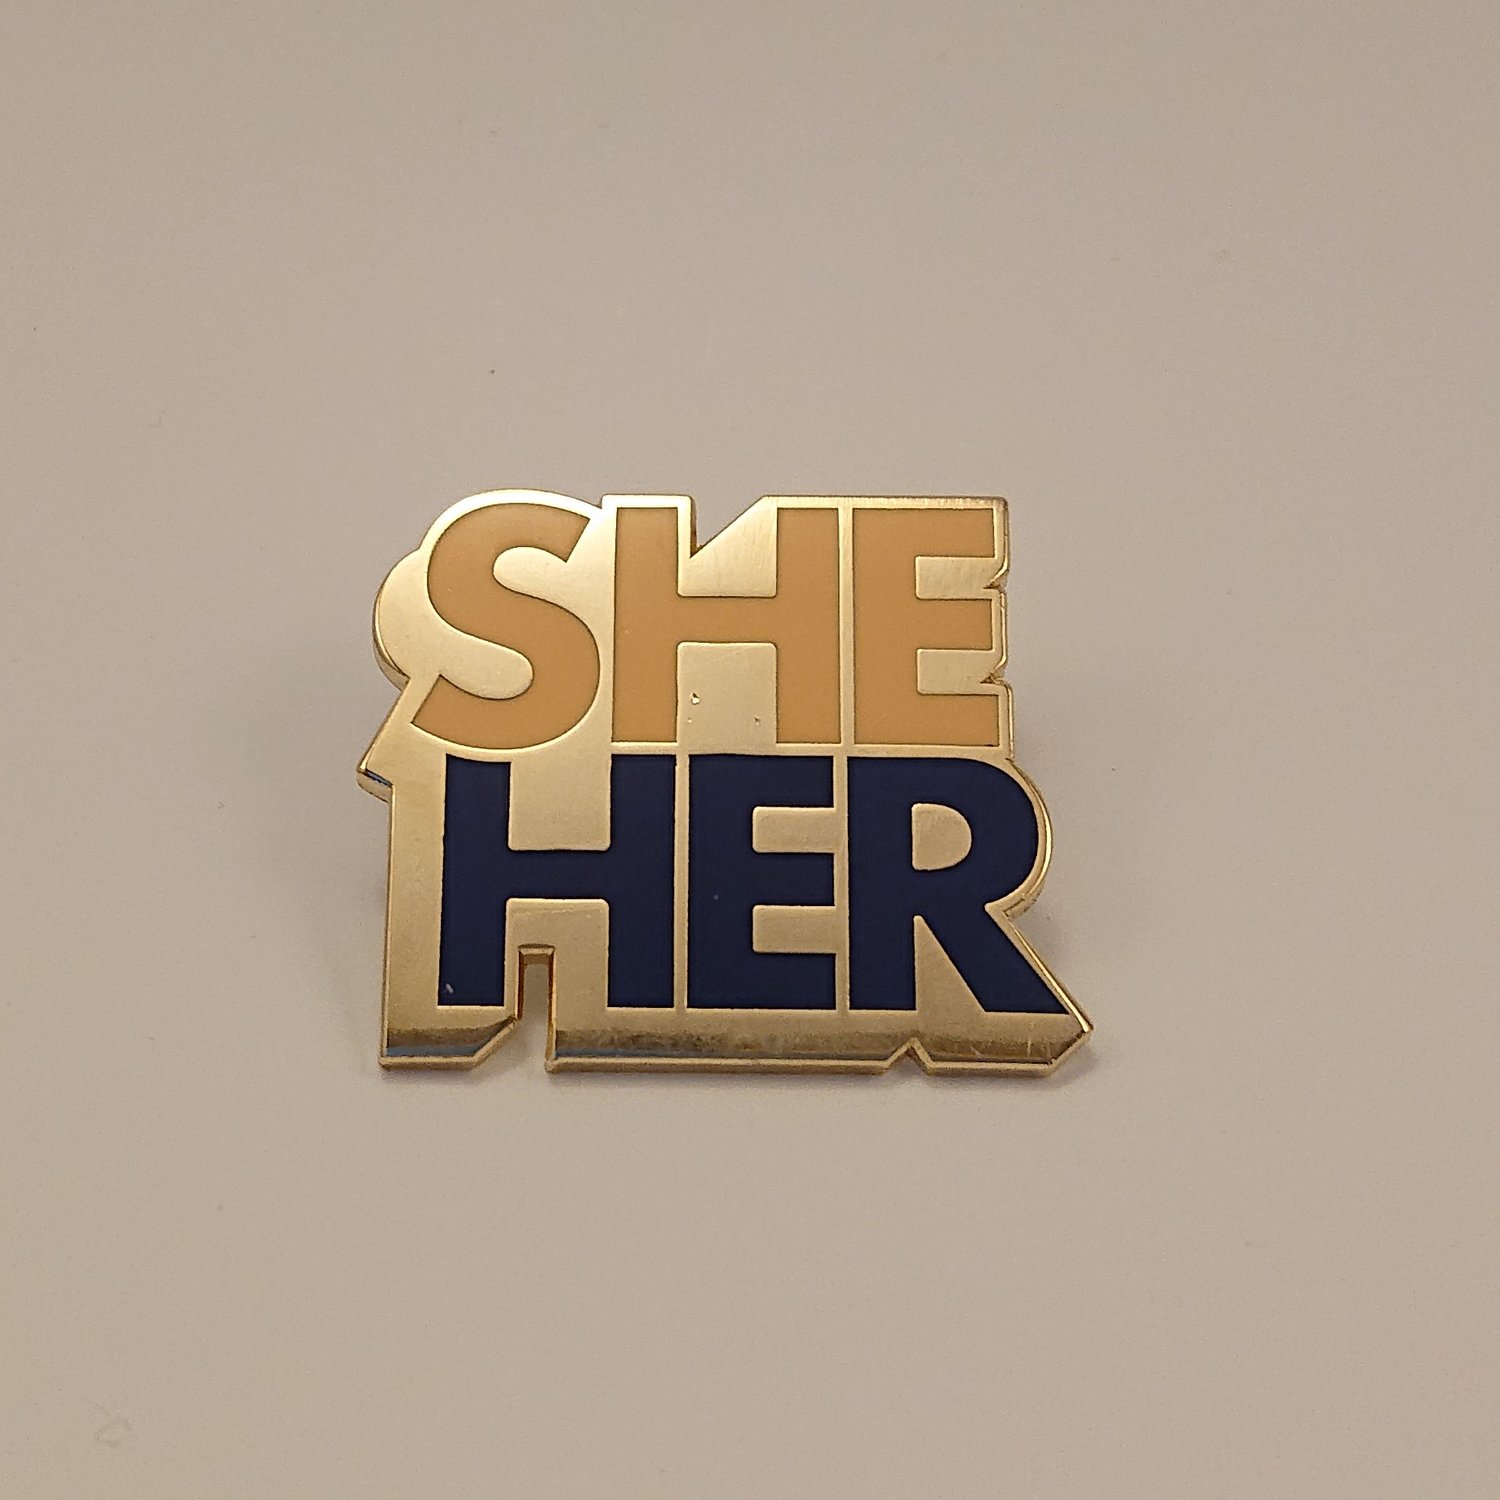 Pronoun Badge - She/Her Colour